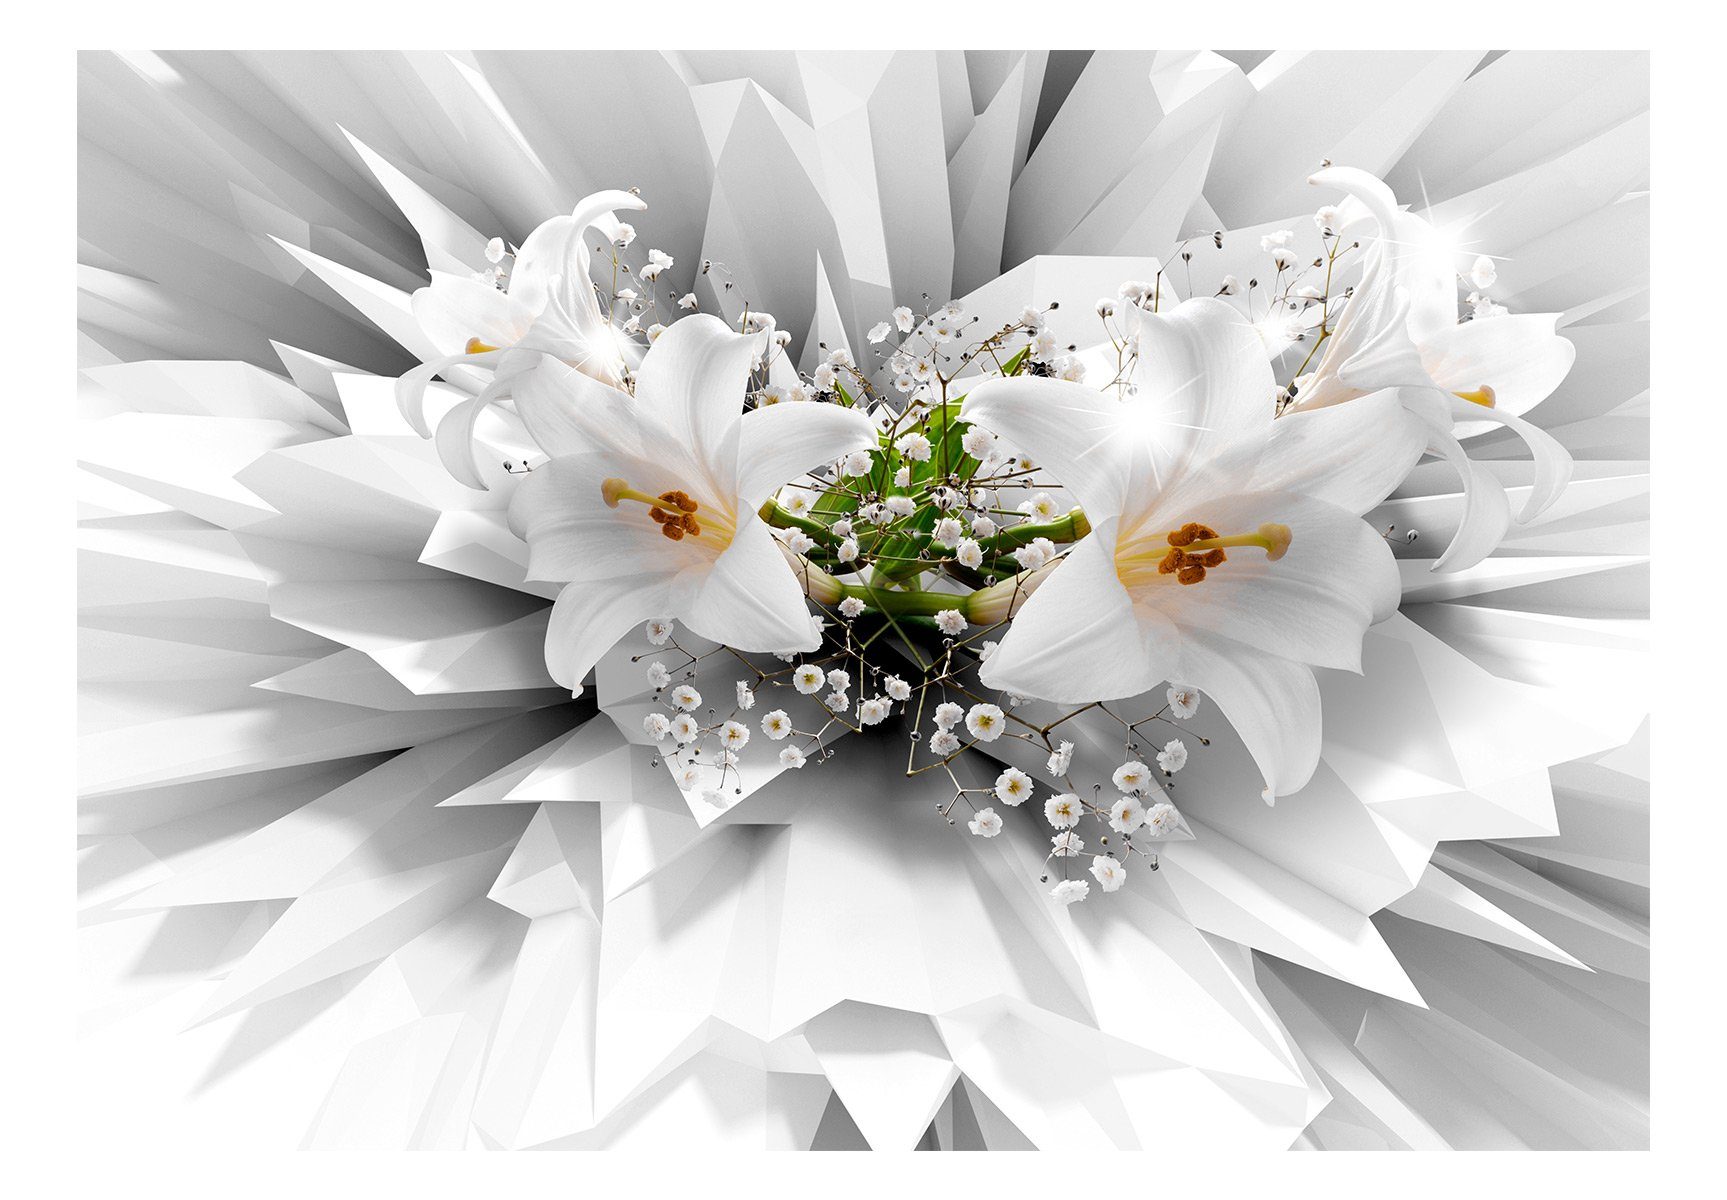 Floral Explosion Vliestapete 1.96x1.4 Tapete matt, KUNSTLOFT Design m, lichtbeständige